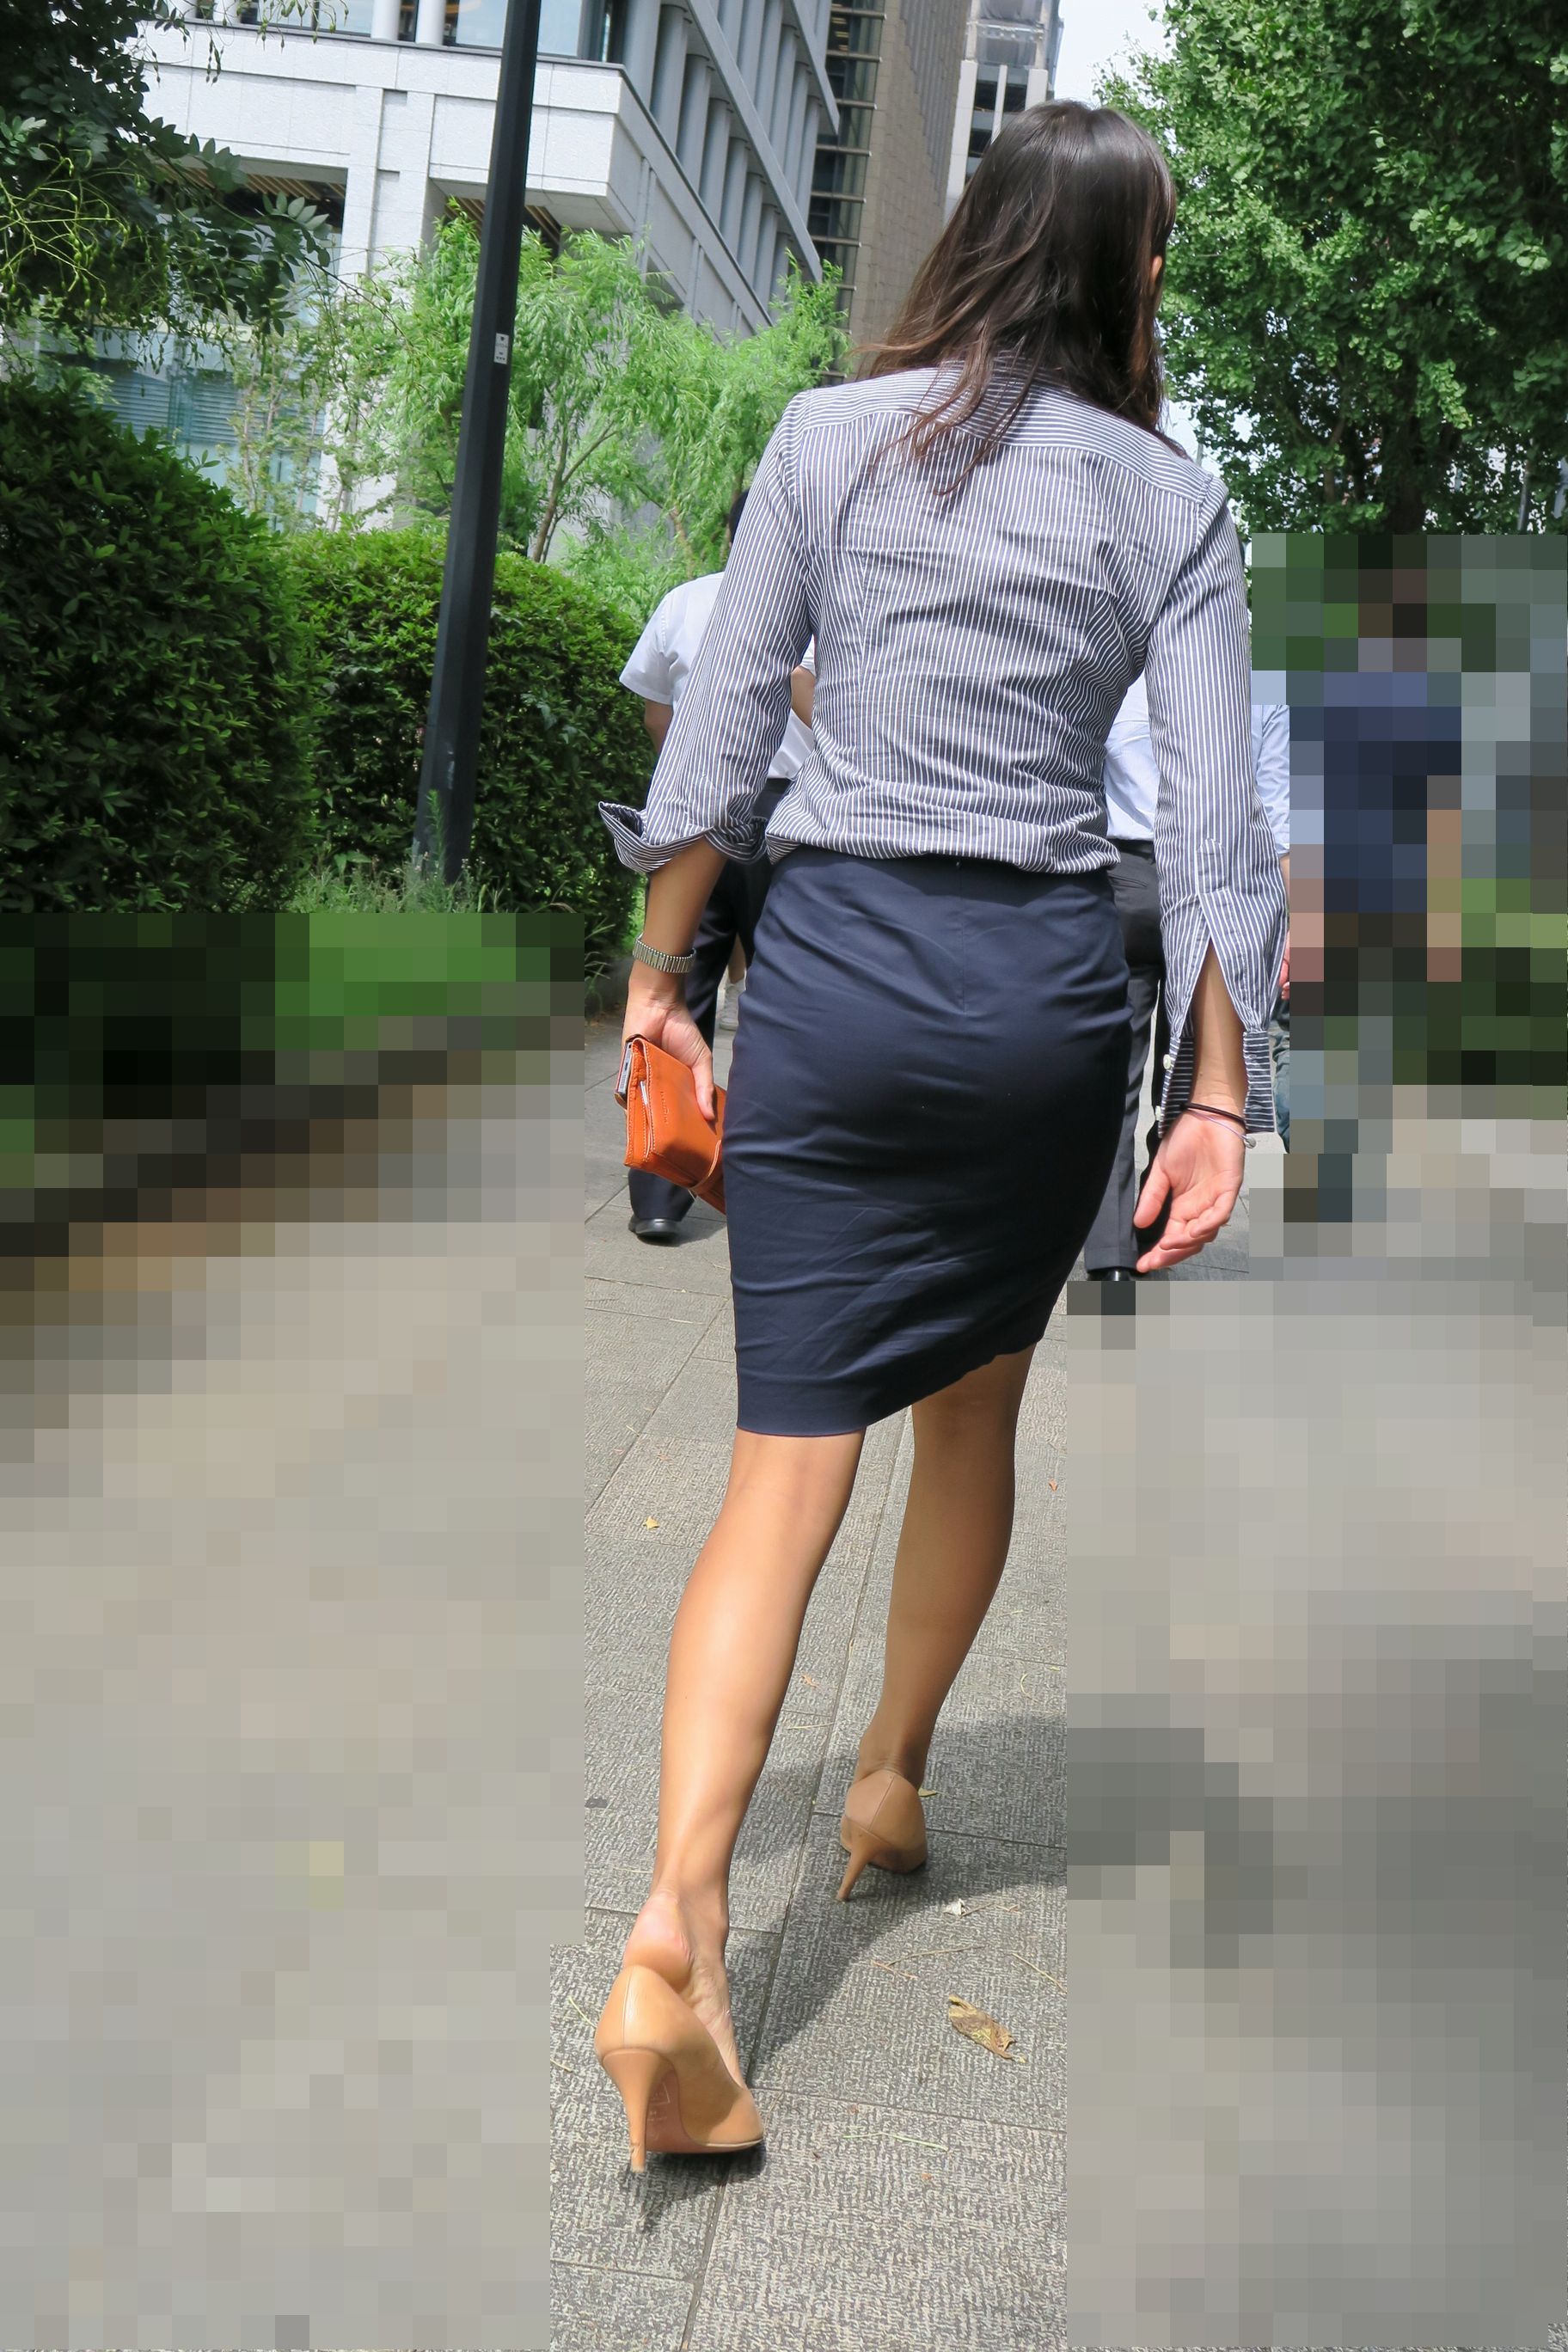 OLさんや就活女子のタイトスカートお尻を街撮りした素人エロ画像-193